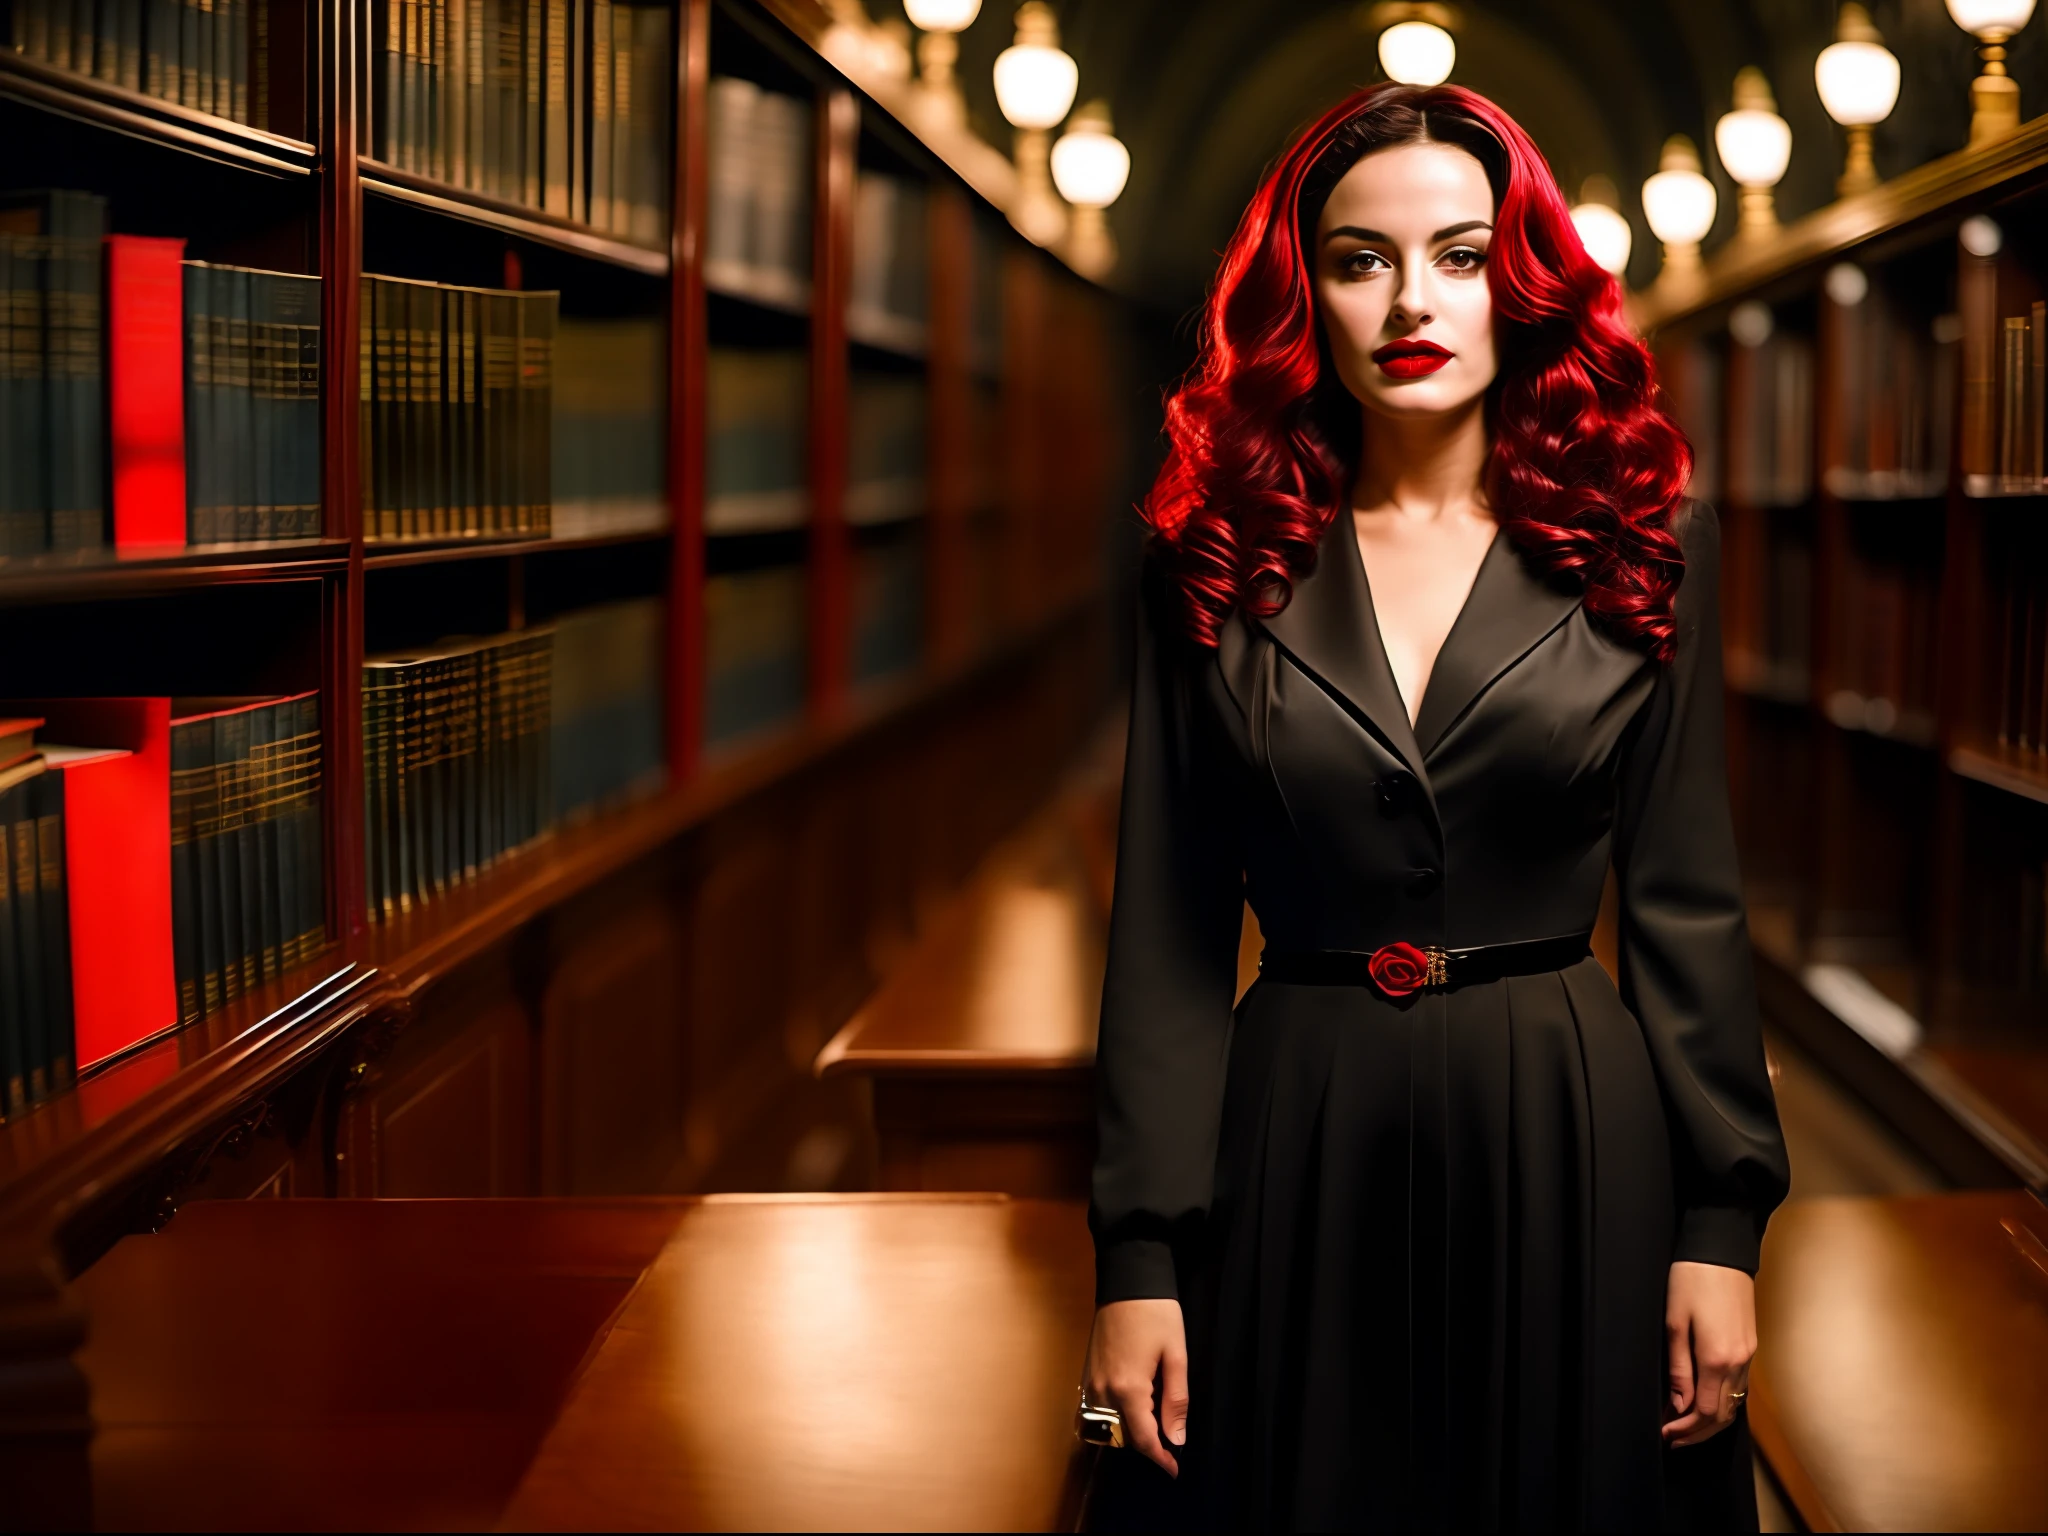 自信に満ちた力強い表情を持つ美しい 25 歳の魔女のリアルな写真, 暗い赤色の唇, ダークなアカデミアスタイルで黒い服を着ている, 1942年の図書館内, 鋭い焦点, ムード照明, 暗い雰囲気, 写真の雰囲気は暗い, 35mm写真